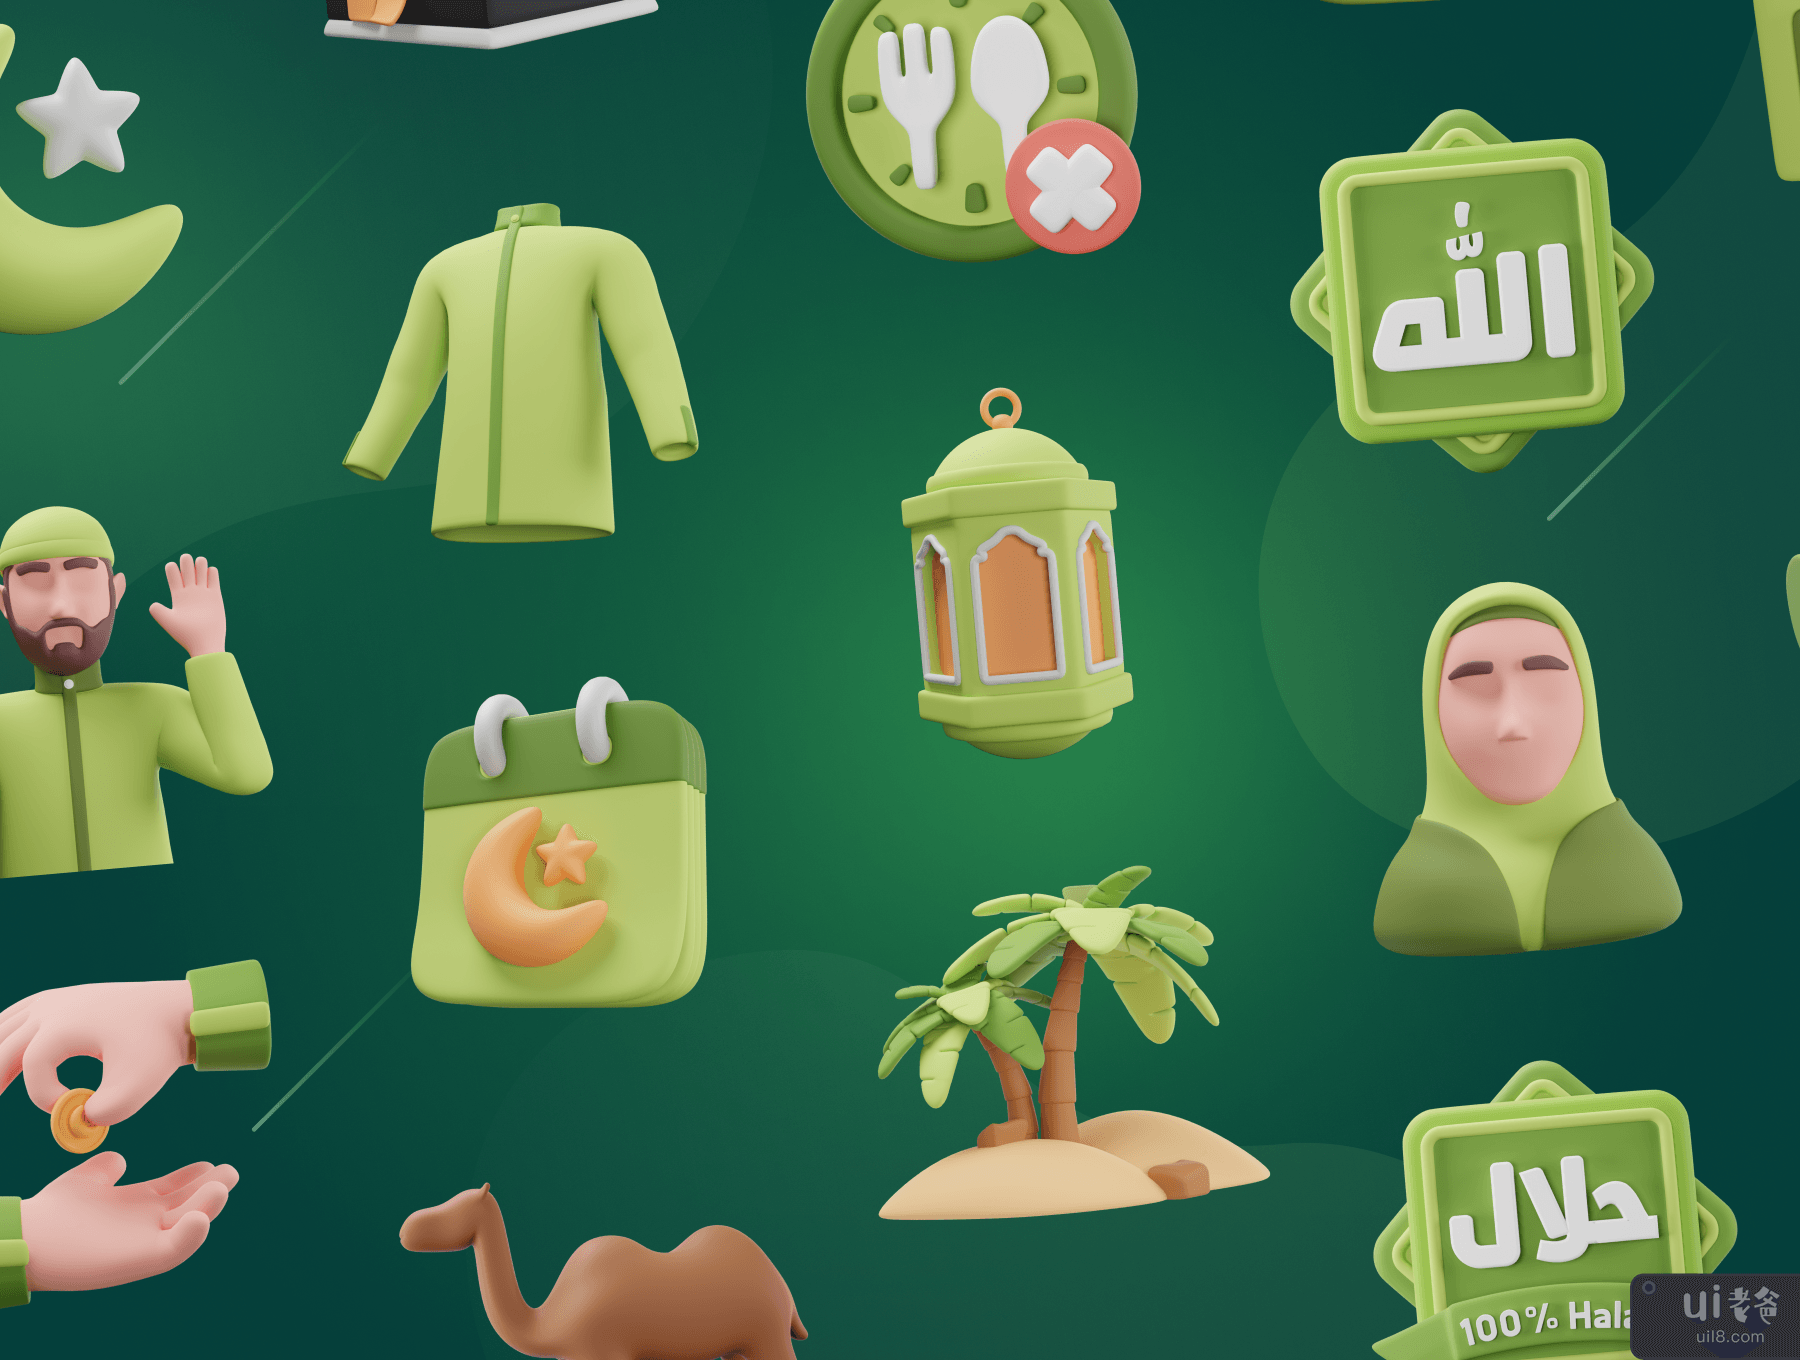 Islamy - 伊斯兰教和斋月 3D 图标集 (Islamy - Islamic & Ramadan 3D Icon Set)插图